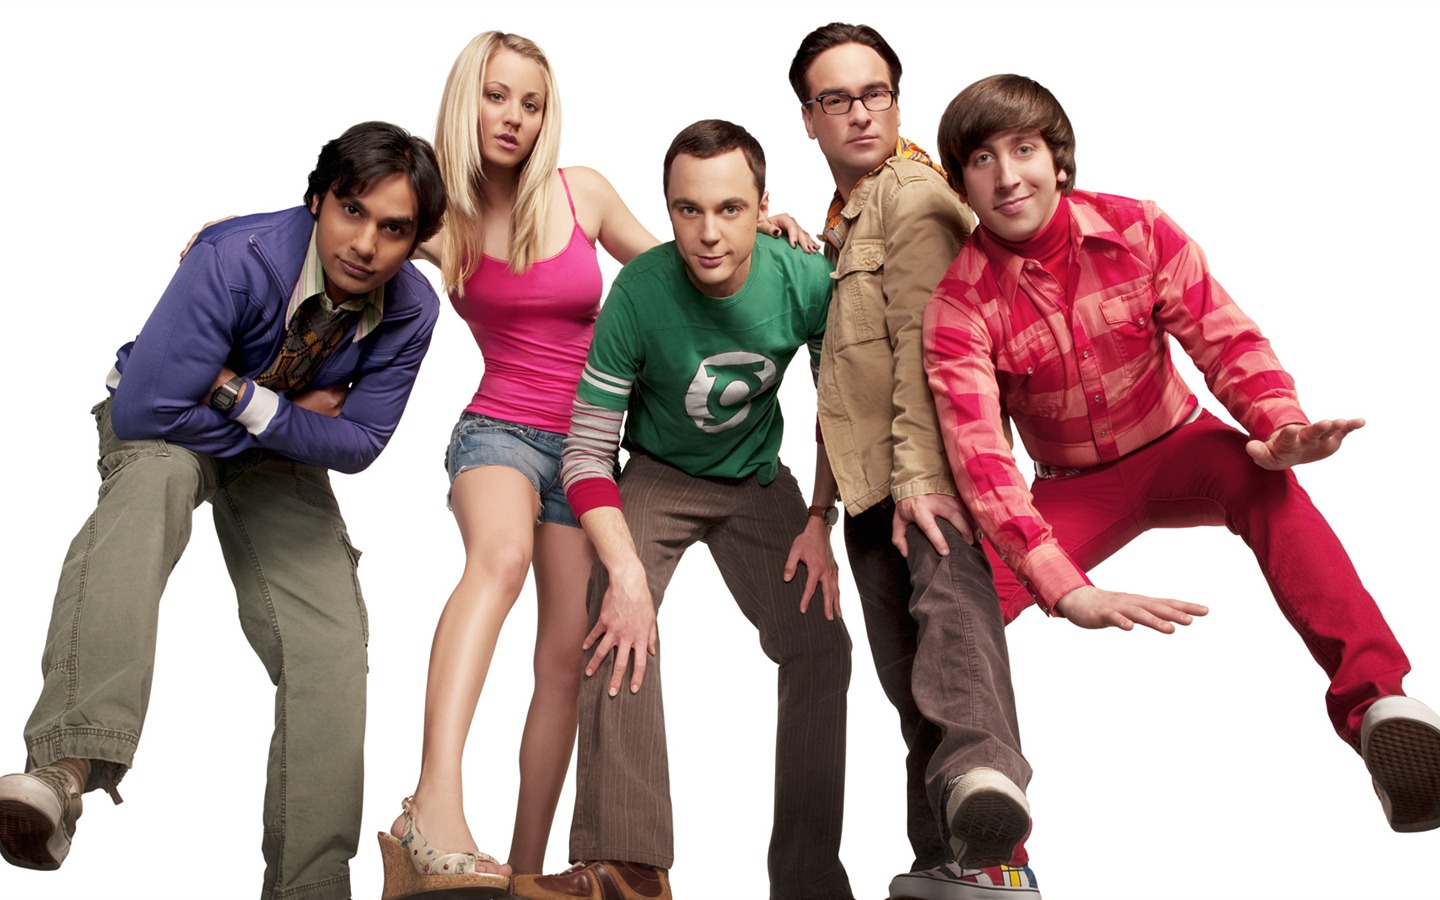 The Big Bang Theory 生活大爆炸 电视剧高清壁纸25 - 1440x900